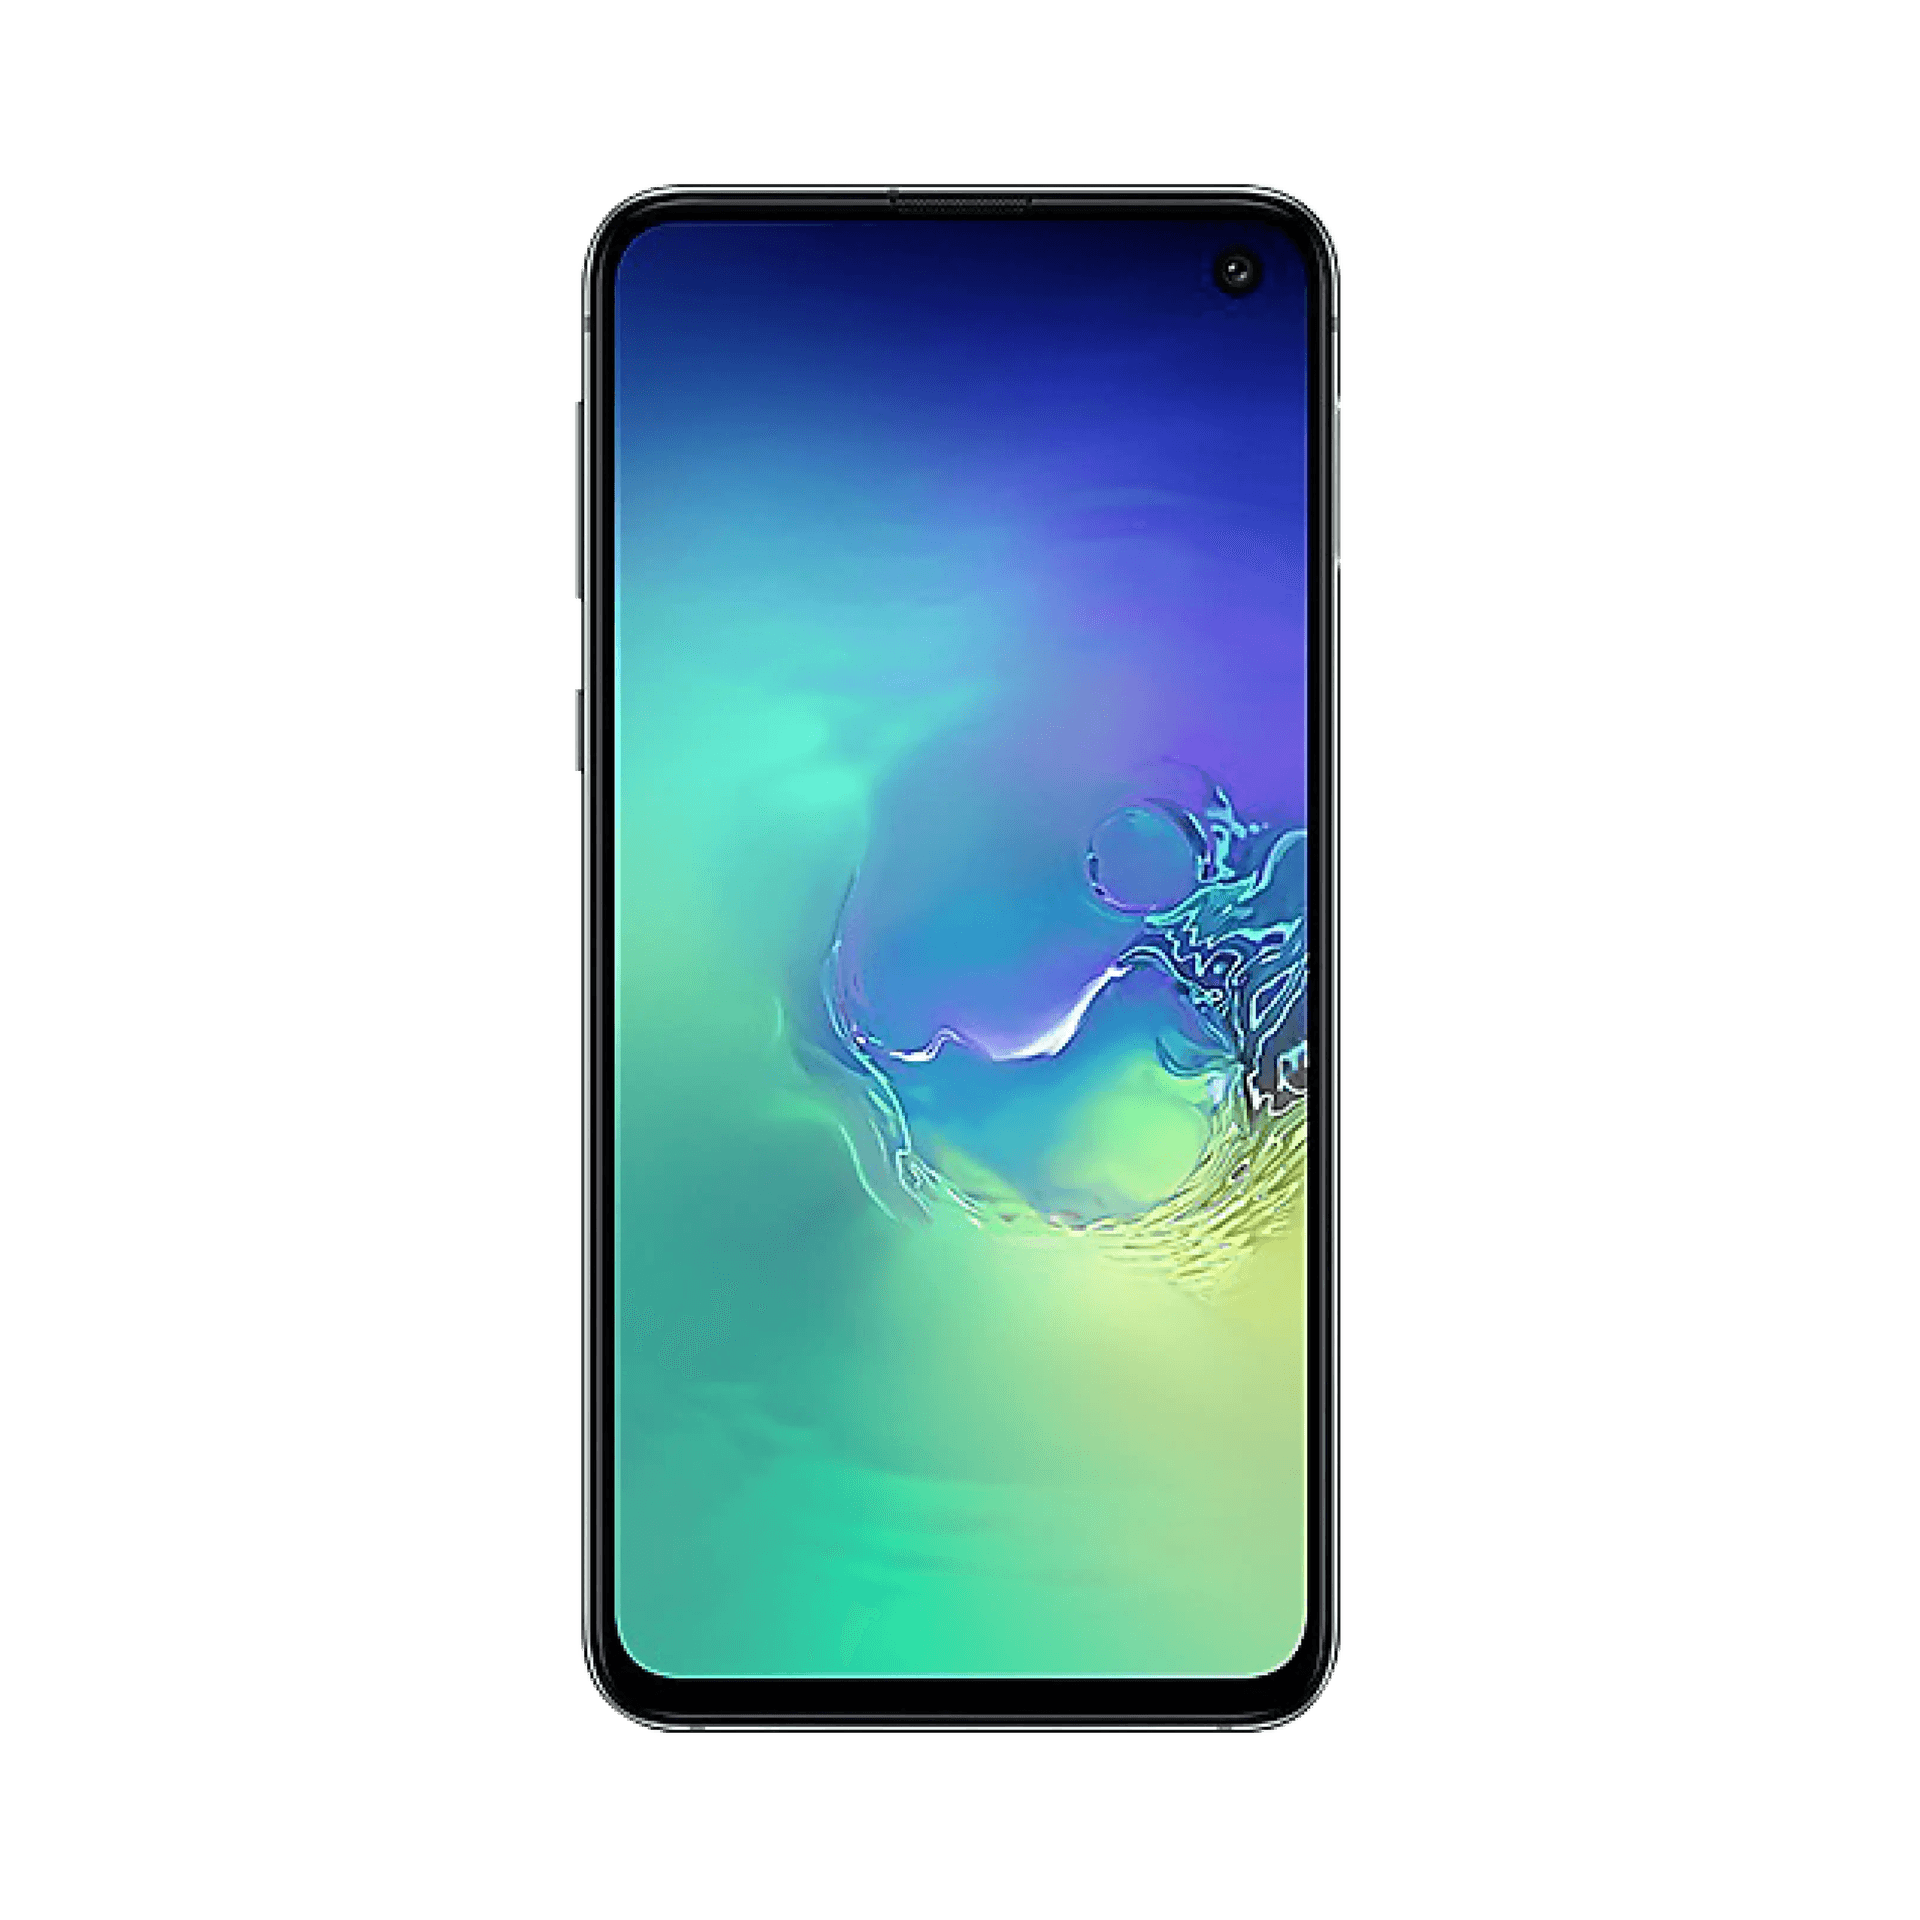 Samsung Galaxy S10 - 128 GB - Prizma Beyazı